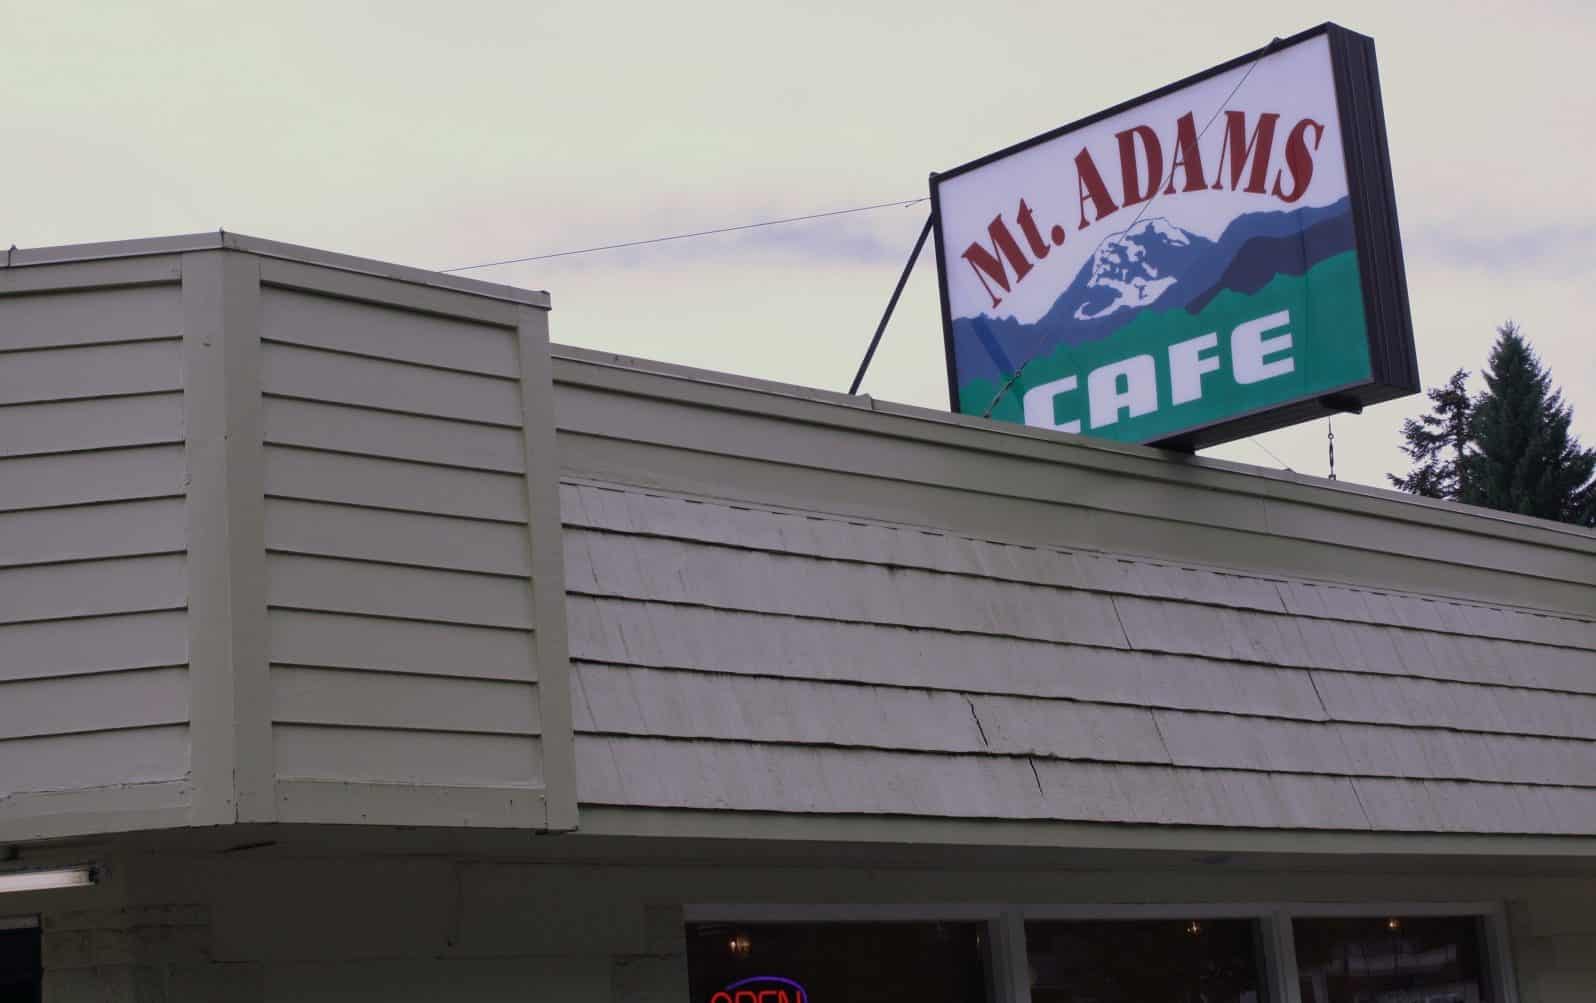 Mt. Adams Cafe